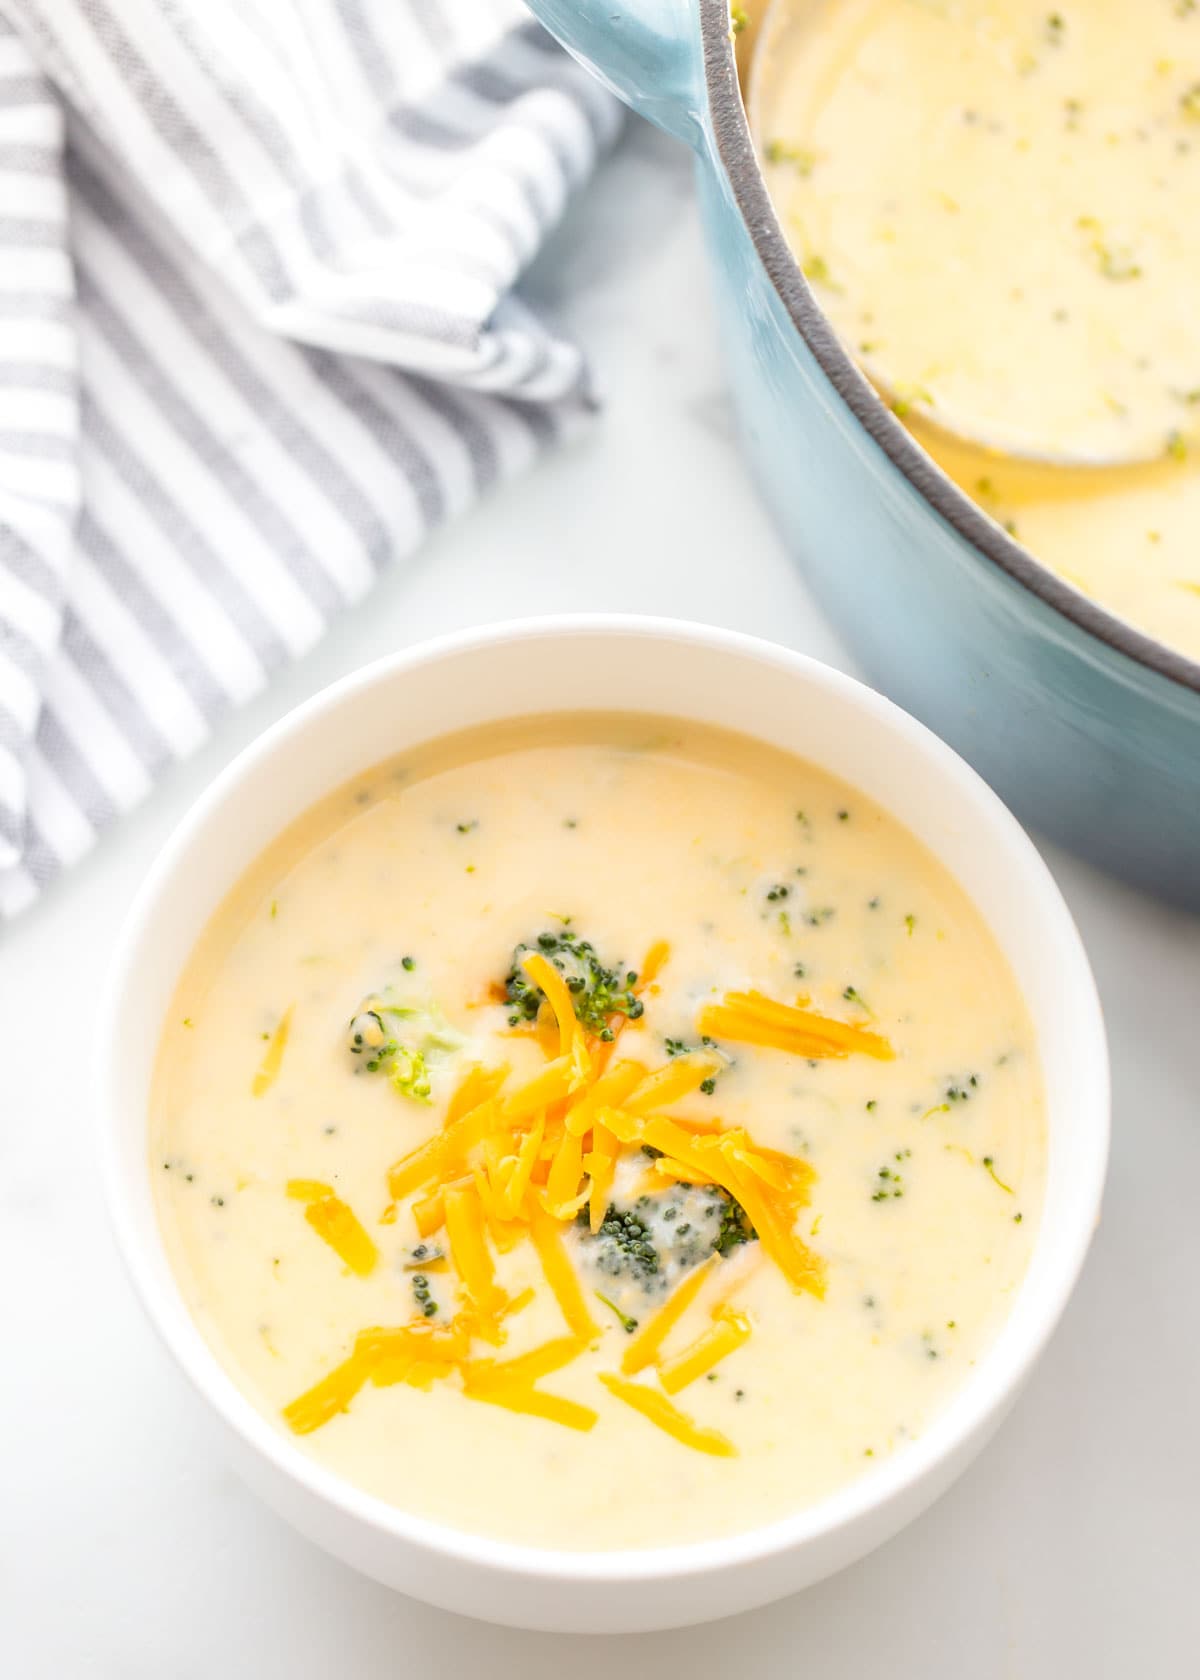 Broccoli cheese soup recipe
